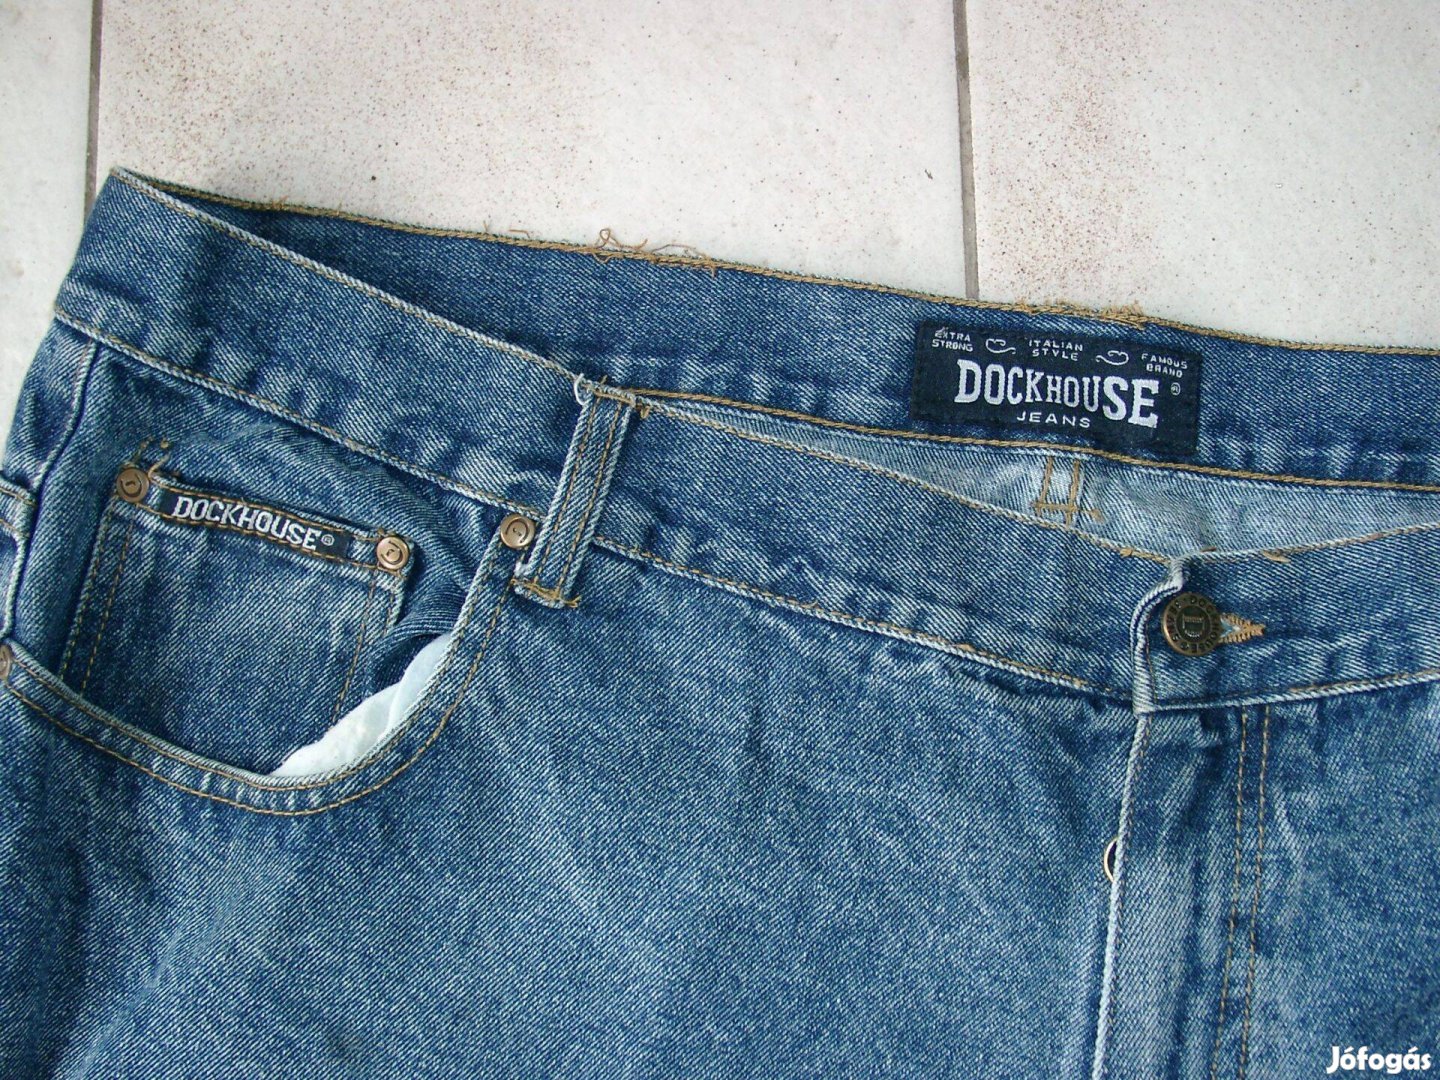 Férfi farmernadrág I. - Dockhouse Jeans